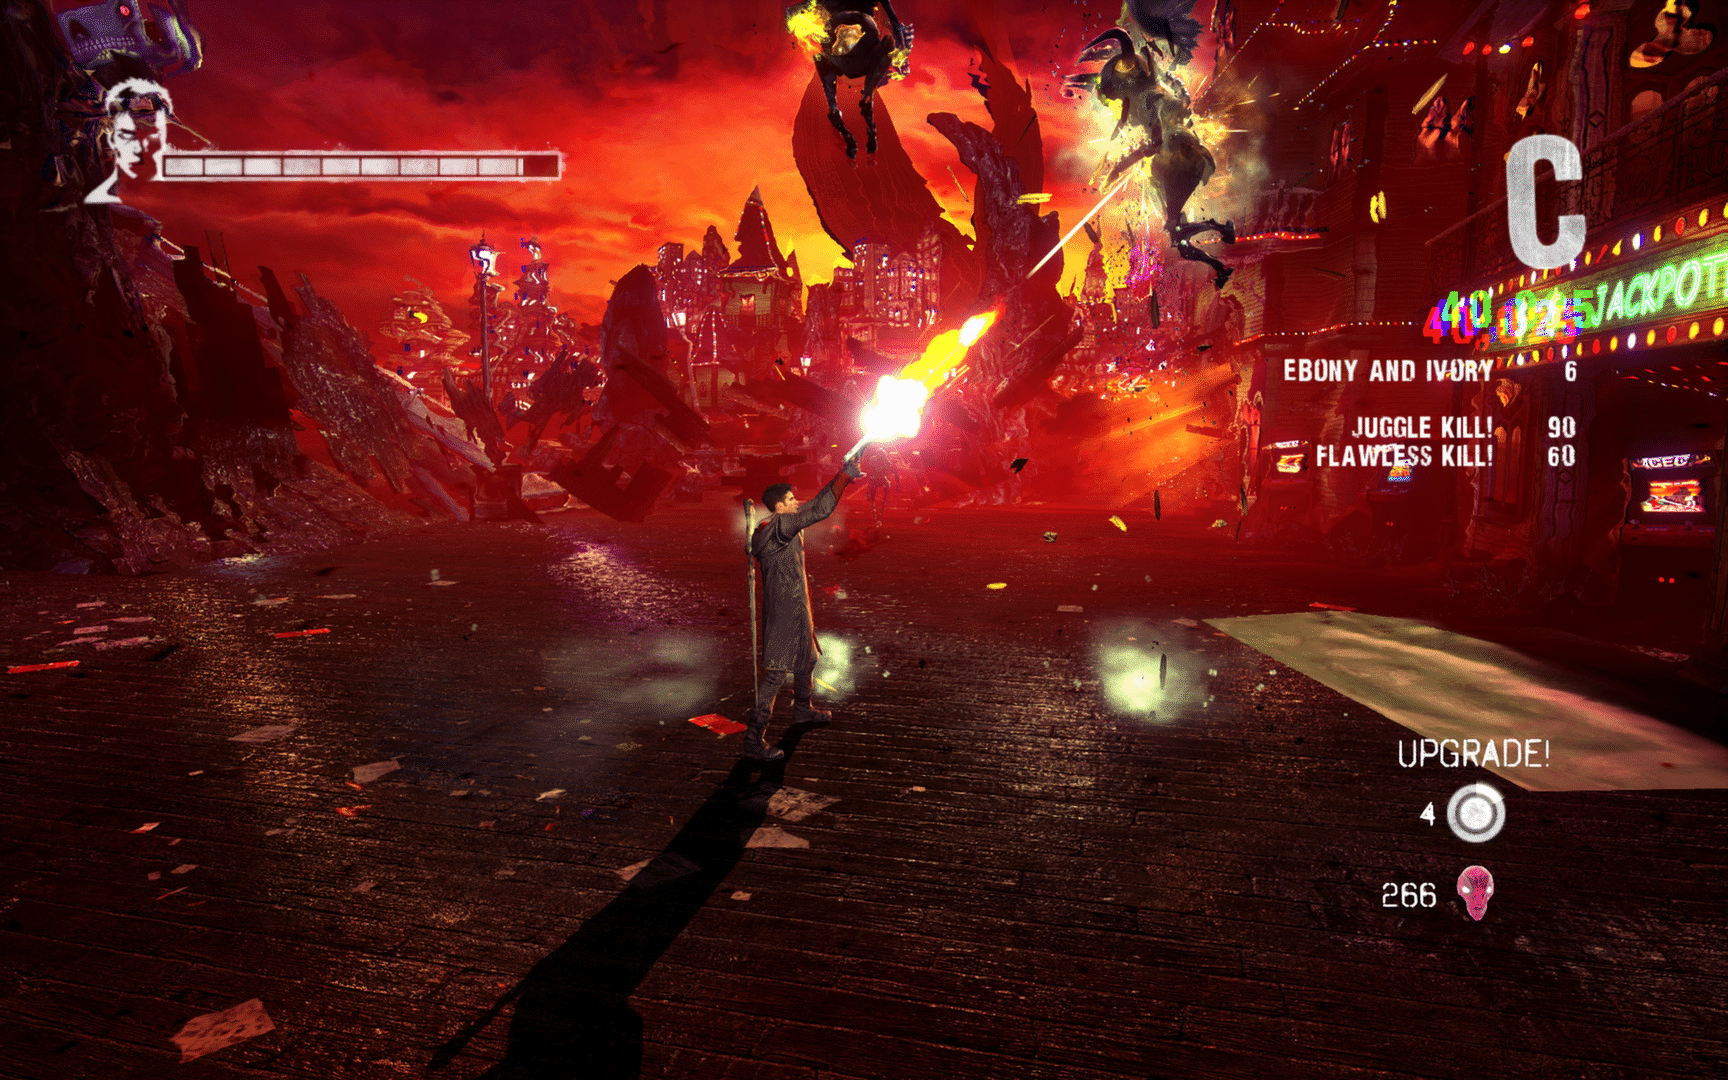 DmC - Devil May Cry recebe requisitos para versão PC